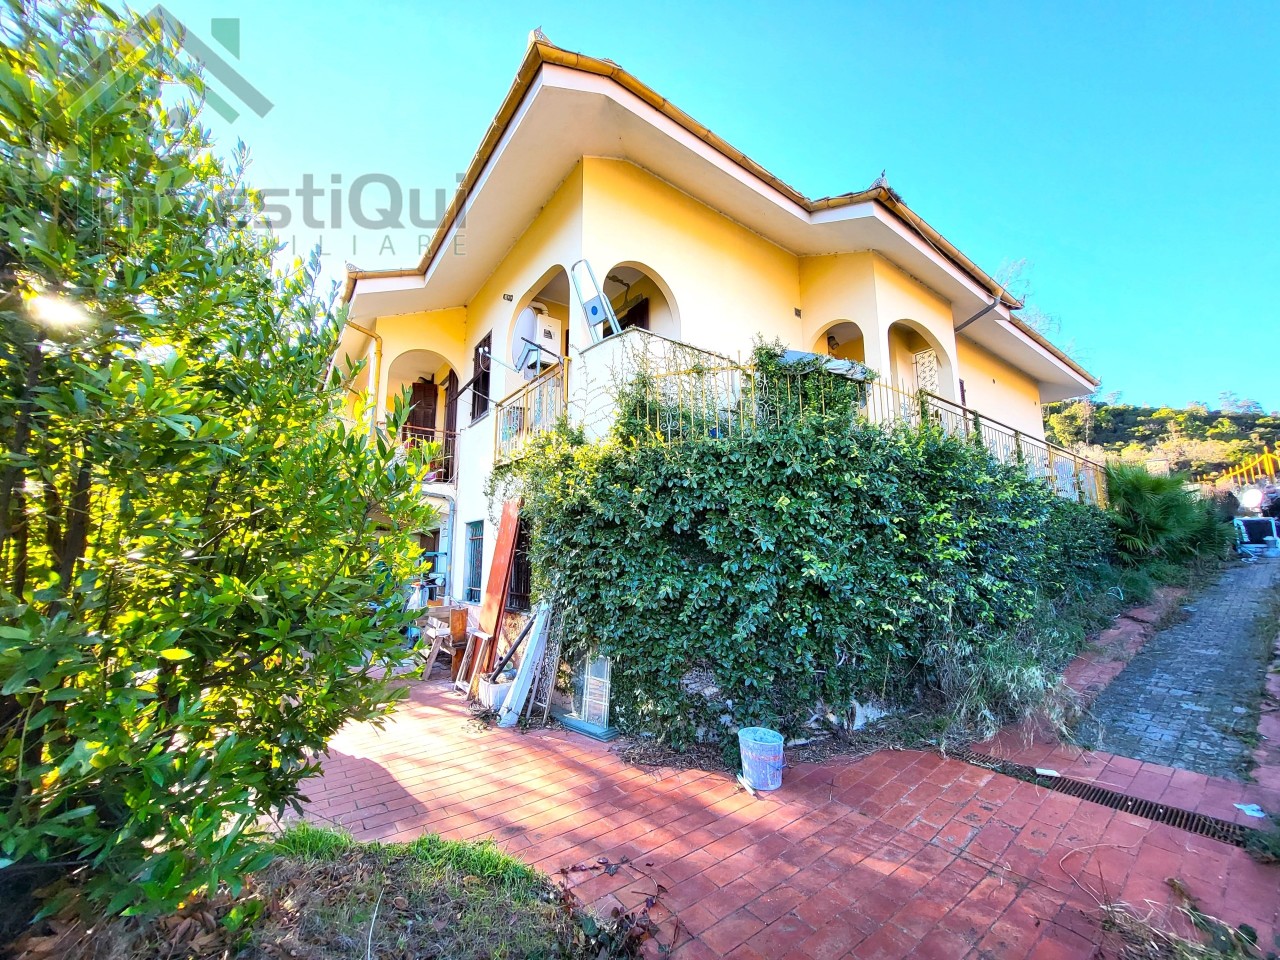 Villa in vendita a Tovo San Giacomo, 8 locali, prezzo € 400.000 | PortaleAgenzieImmobiliari.it